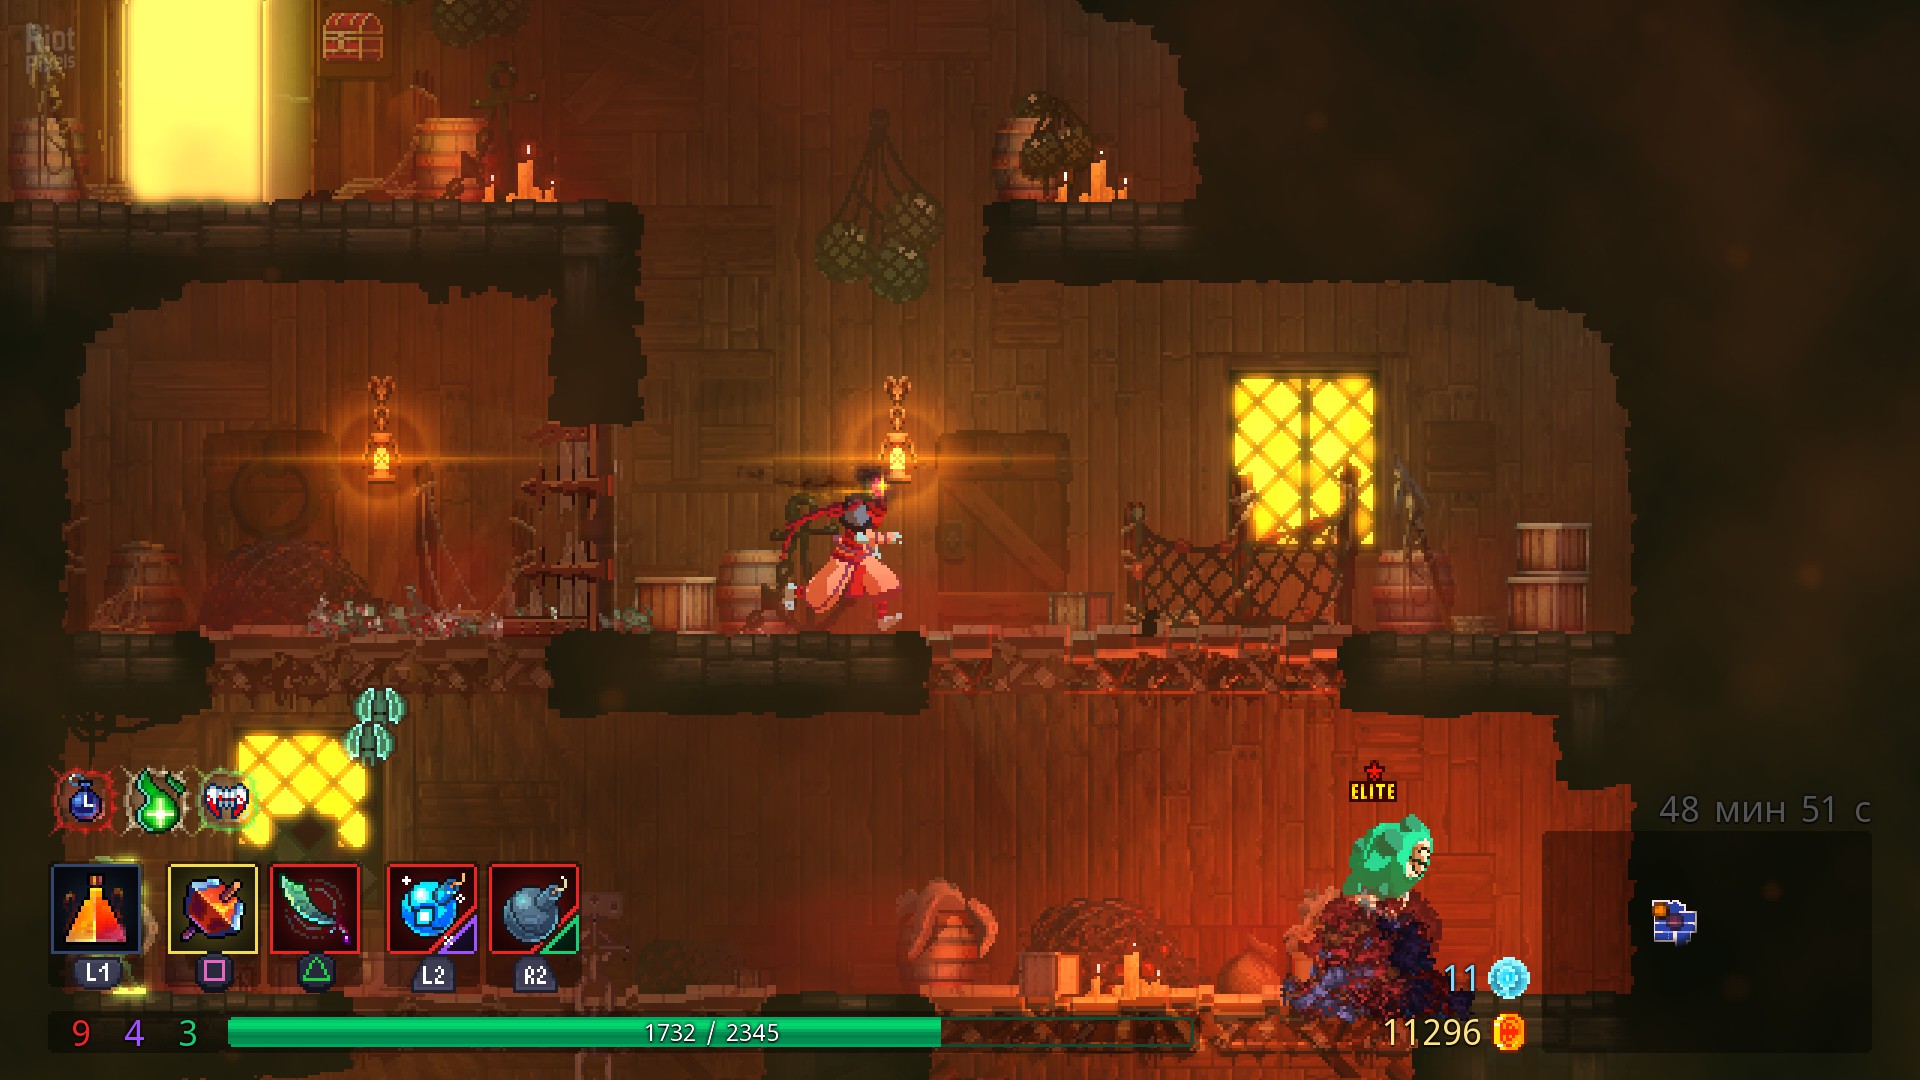 Dead Cells - game screenshots at Riot Pixels, images